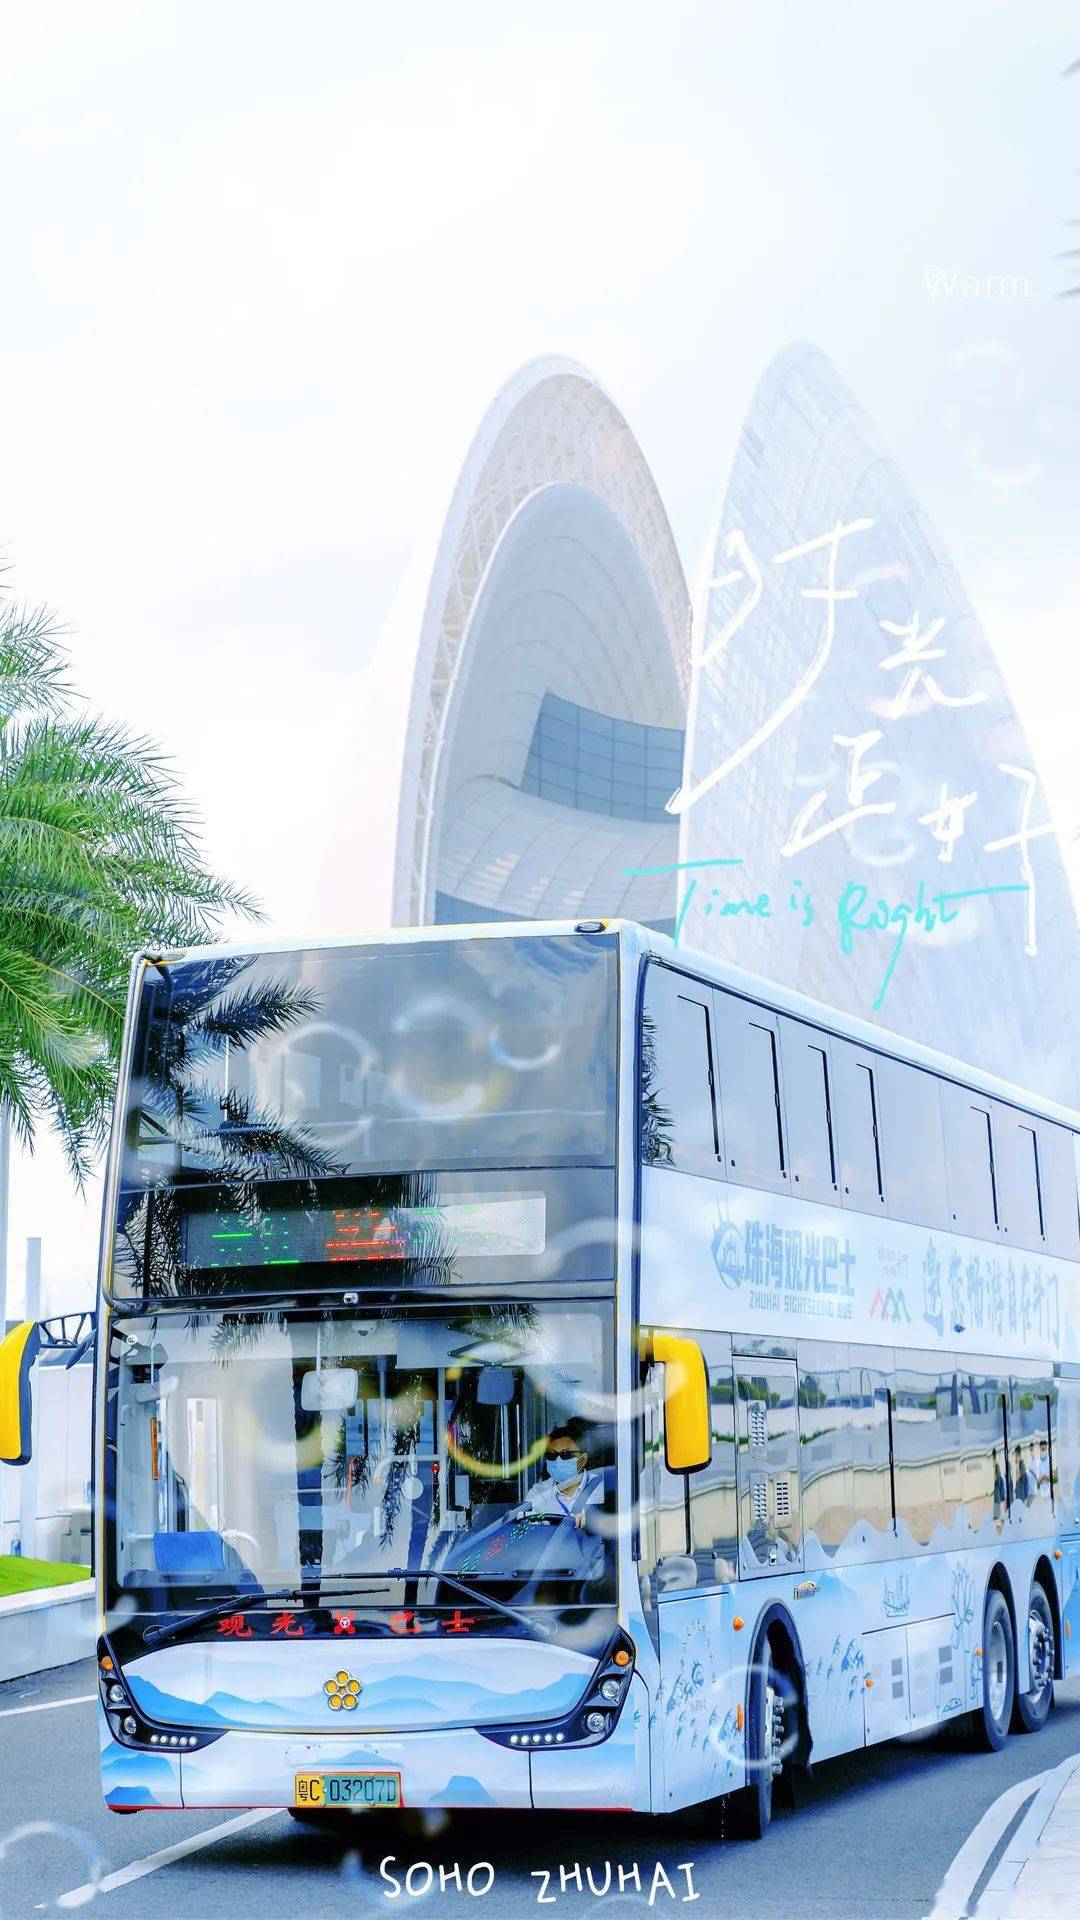 20181124_惠州南站巴士隨影 - 1 - 兩岸三地巴士 (B4) - hkitalk.net 香港交通資訊網 - Powered by ...